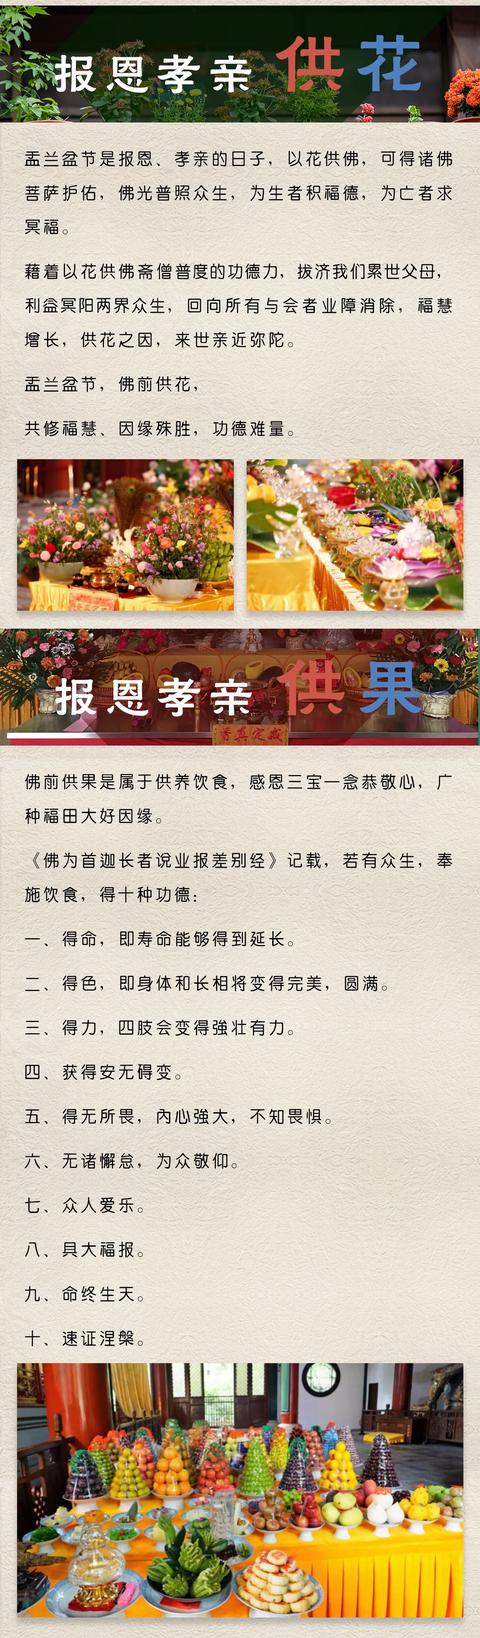 您可以在 中华网佛教频道app线上供养三宝,供灯,供花,供果,并且,中华